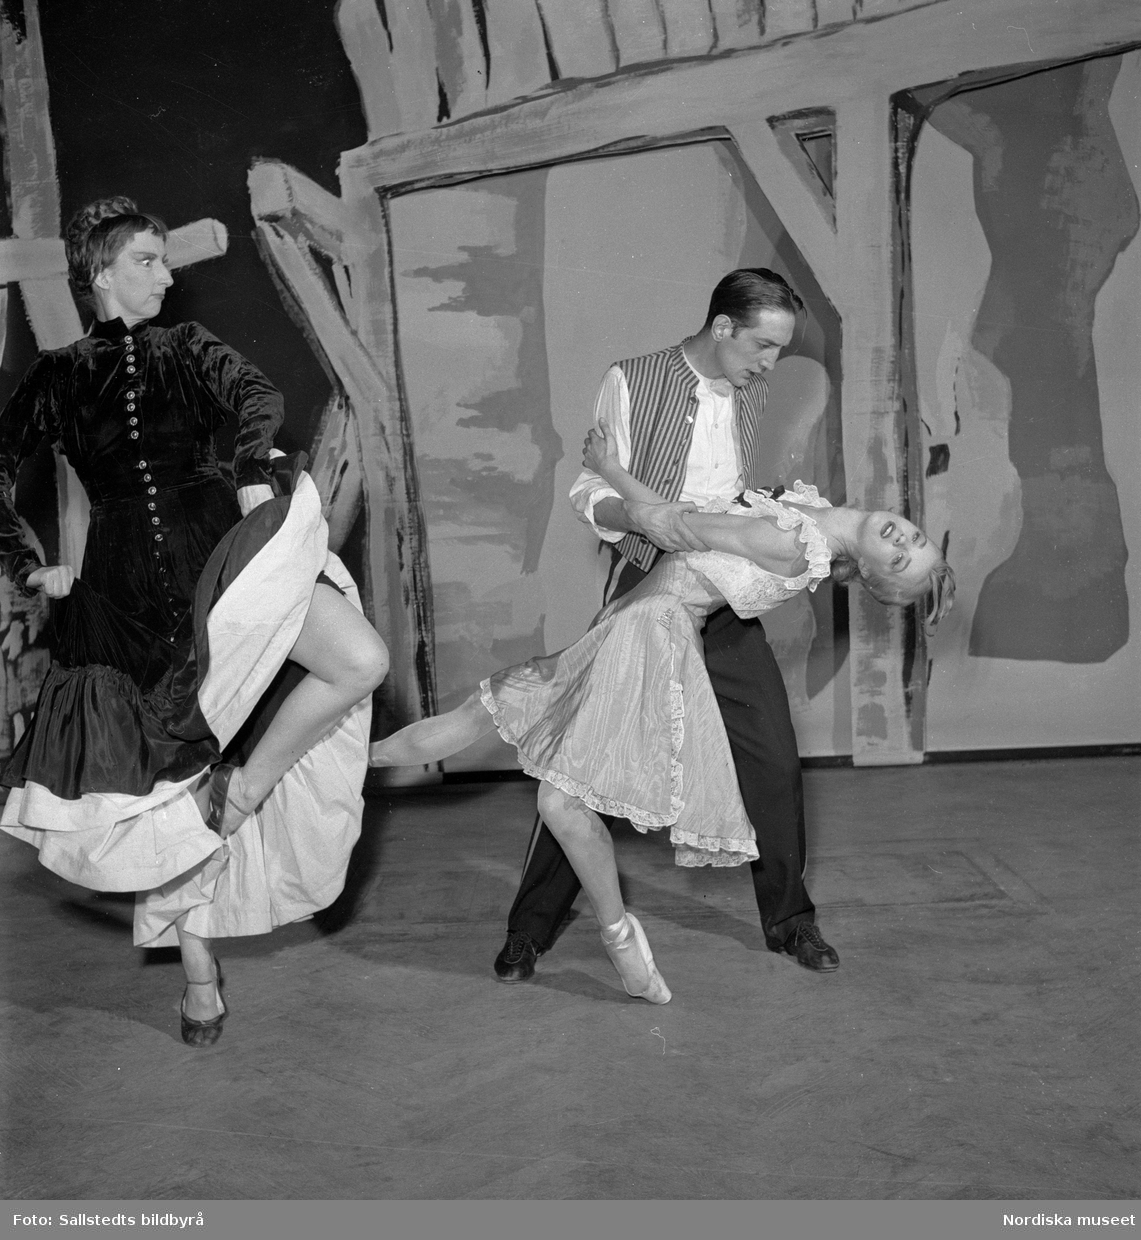 Dansaren och koreografen Birgit Cullberg tillsammans med Elsa-Marianne von Rosen och Julius Mengarelli i Fröken Julie på Södra Teatern, Riksteatern, februari 1950.